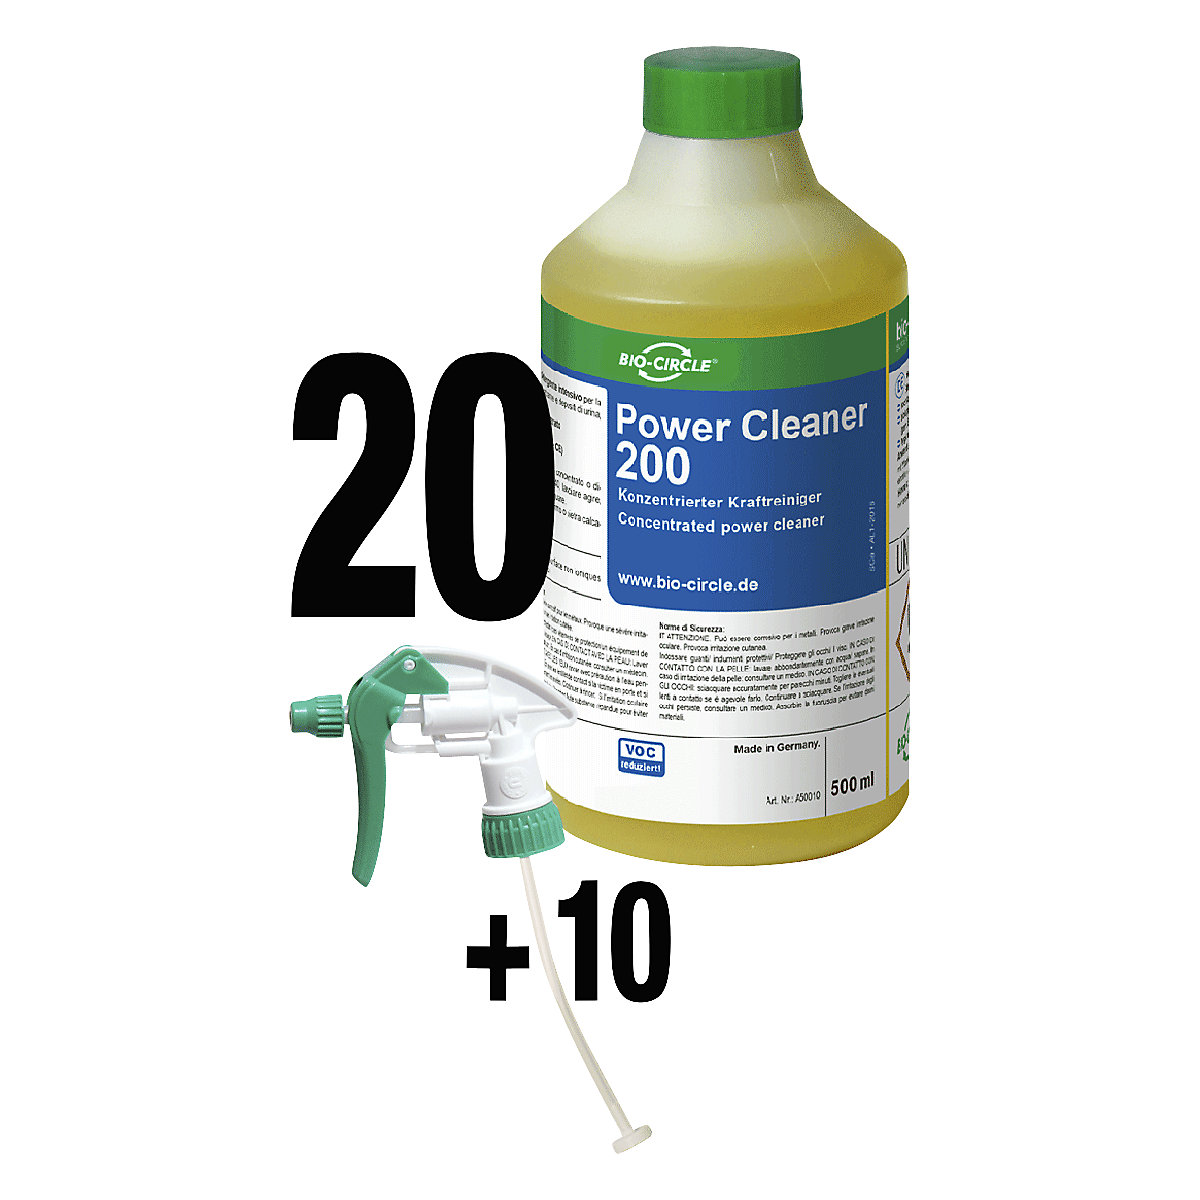 Power Cleaner 200 intenzív tisztítókoncentrátum – Bio-Circle